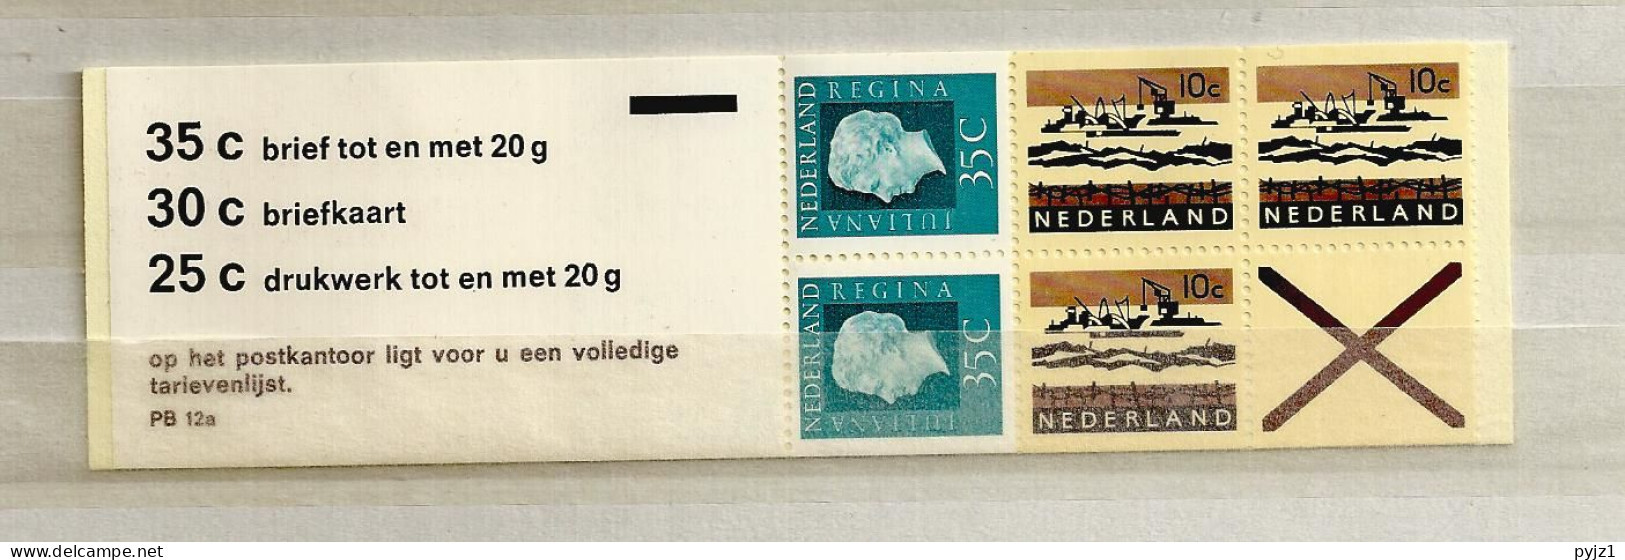 1971 MNH Nederland NVPH PB 12aF - Booklets & Coils